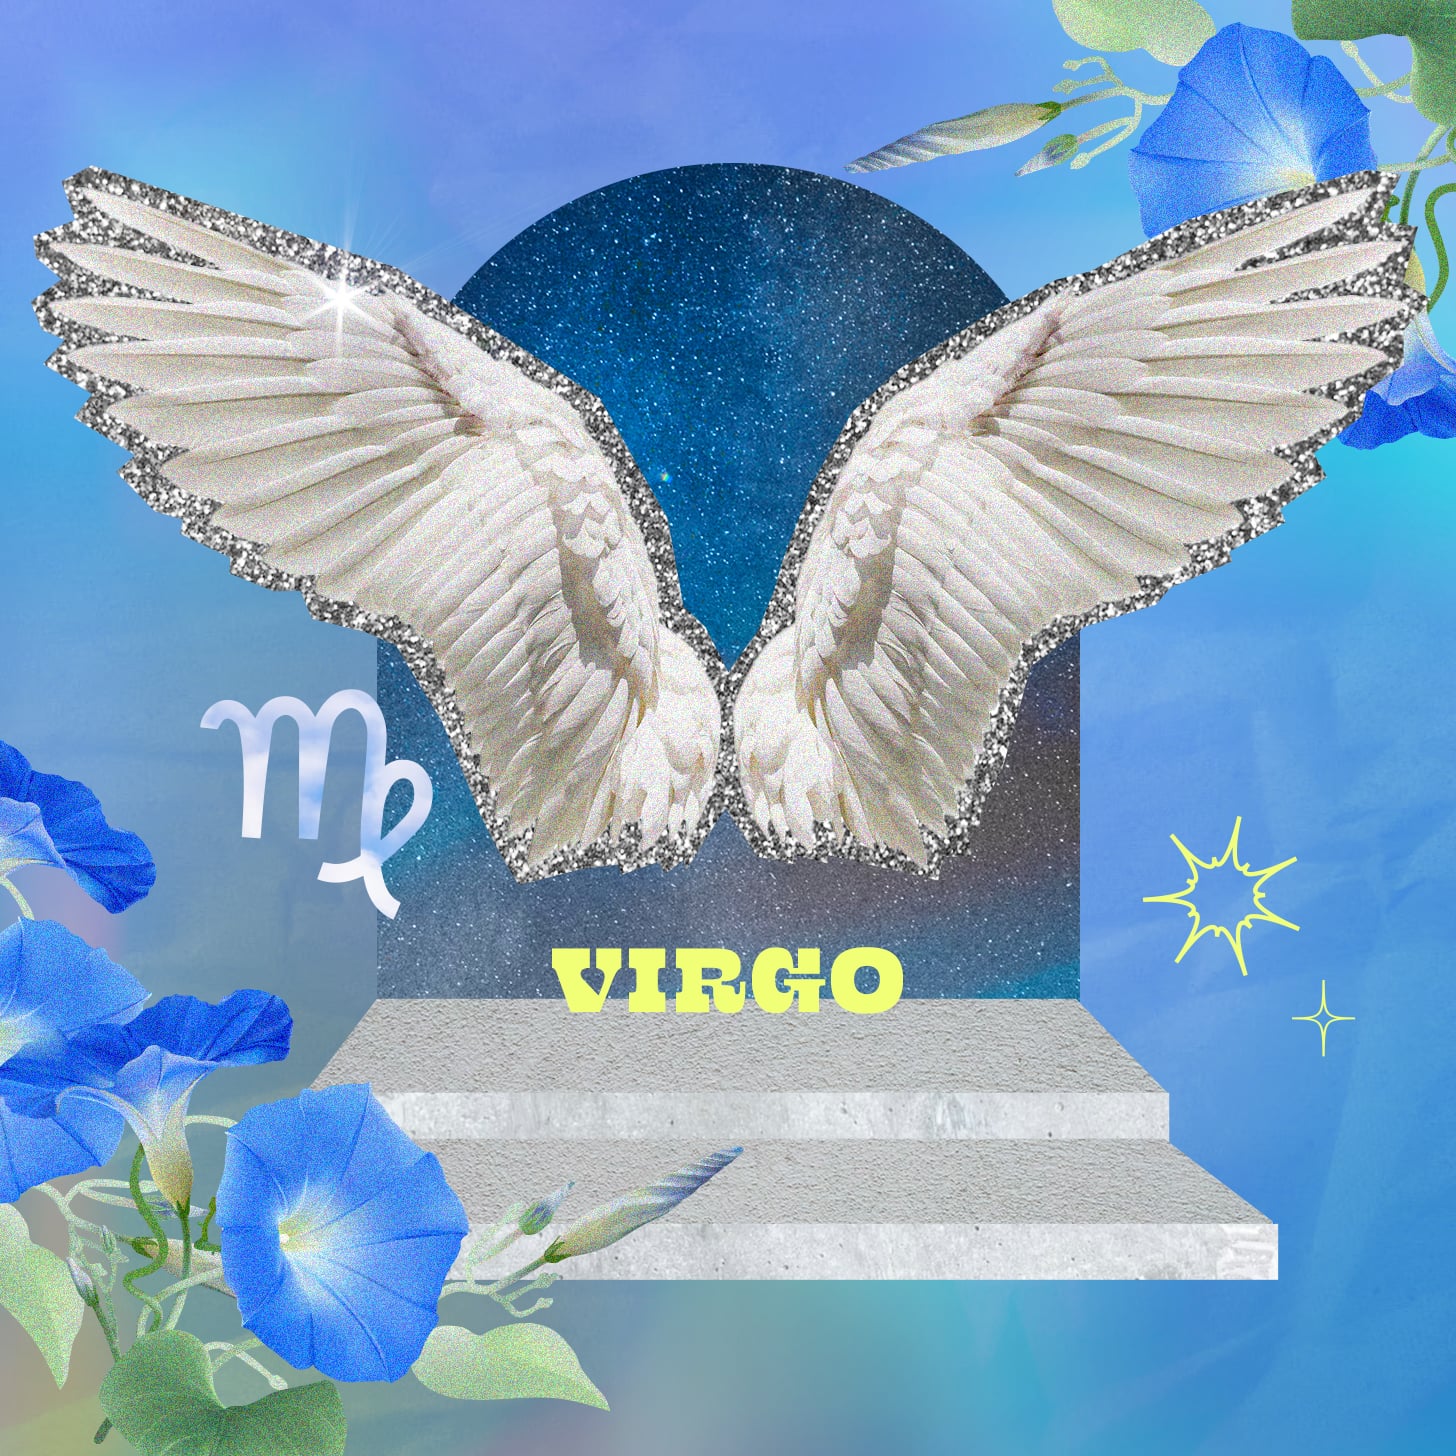 Virgo weekly horoscope for November 13, 2022